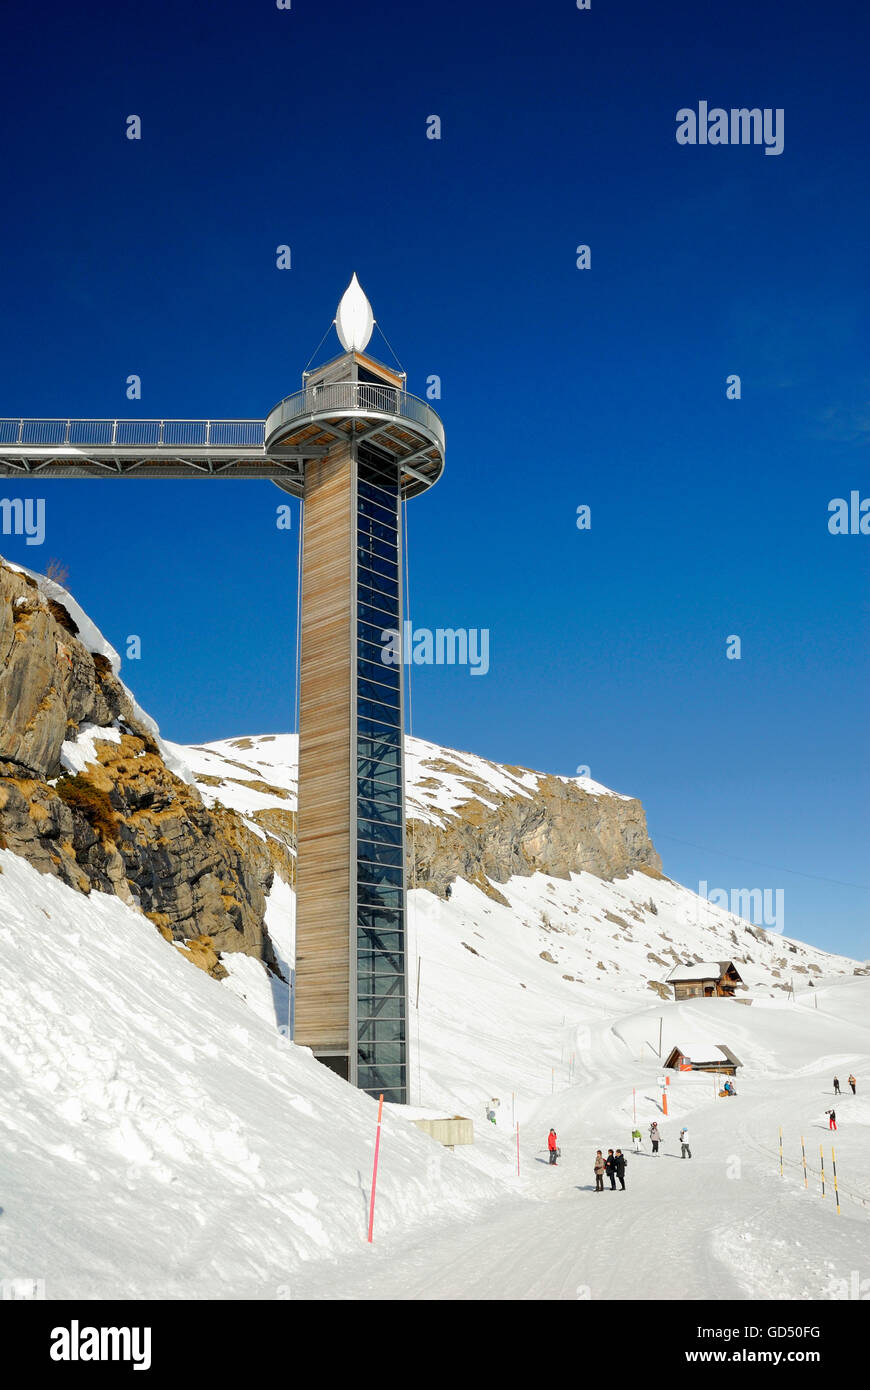 Melchsee-Frutt, Panorama-Lift in Melchsee-Frutt, Skigebiet in den Schweizer Alpen, Kanton Obvaldo, Schweiz, Europa Foto Stock